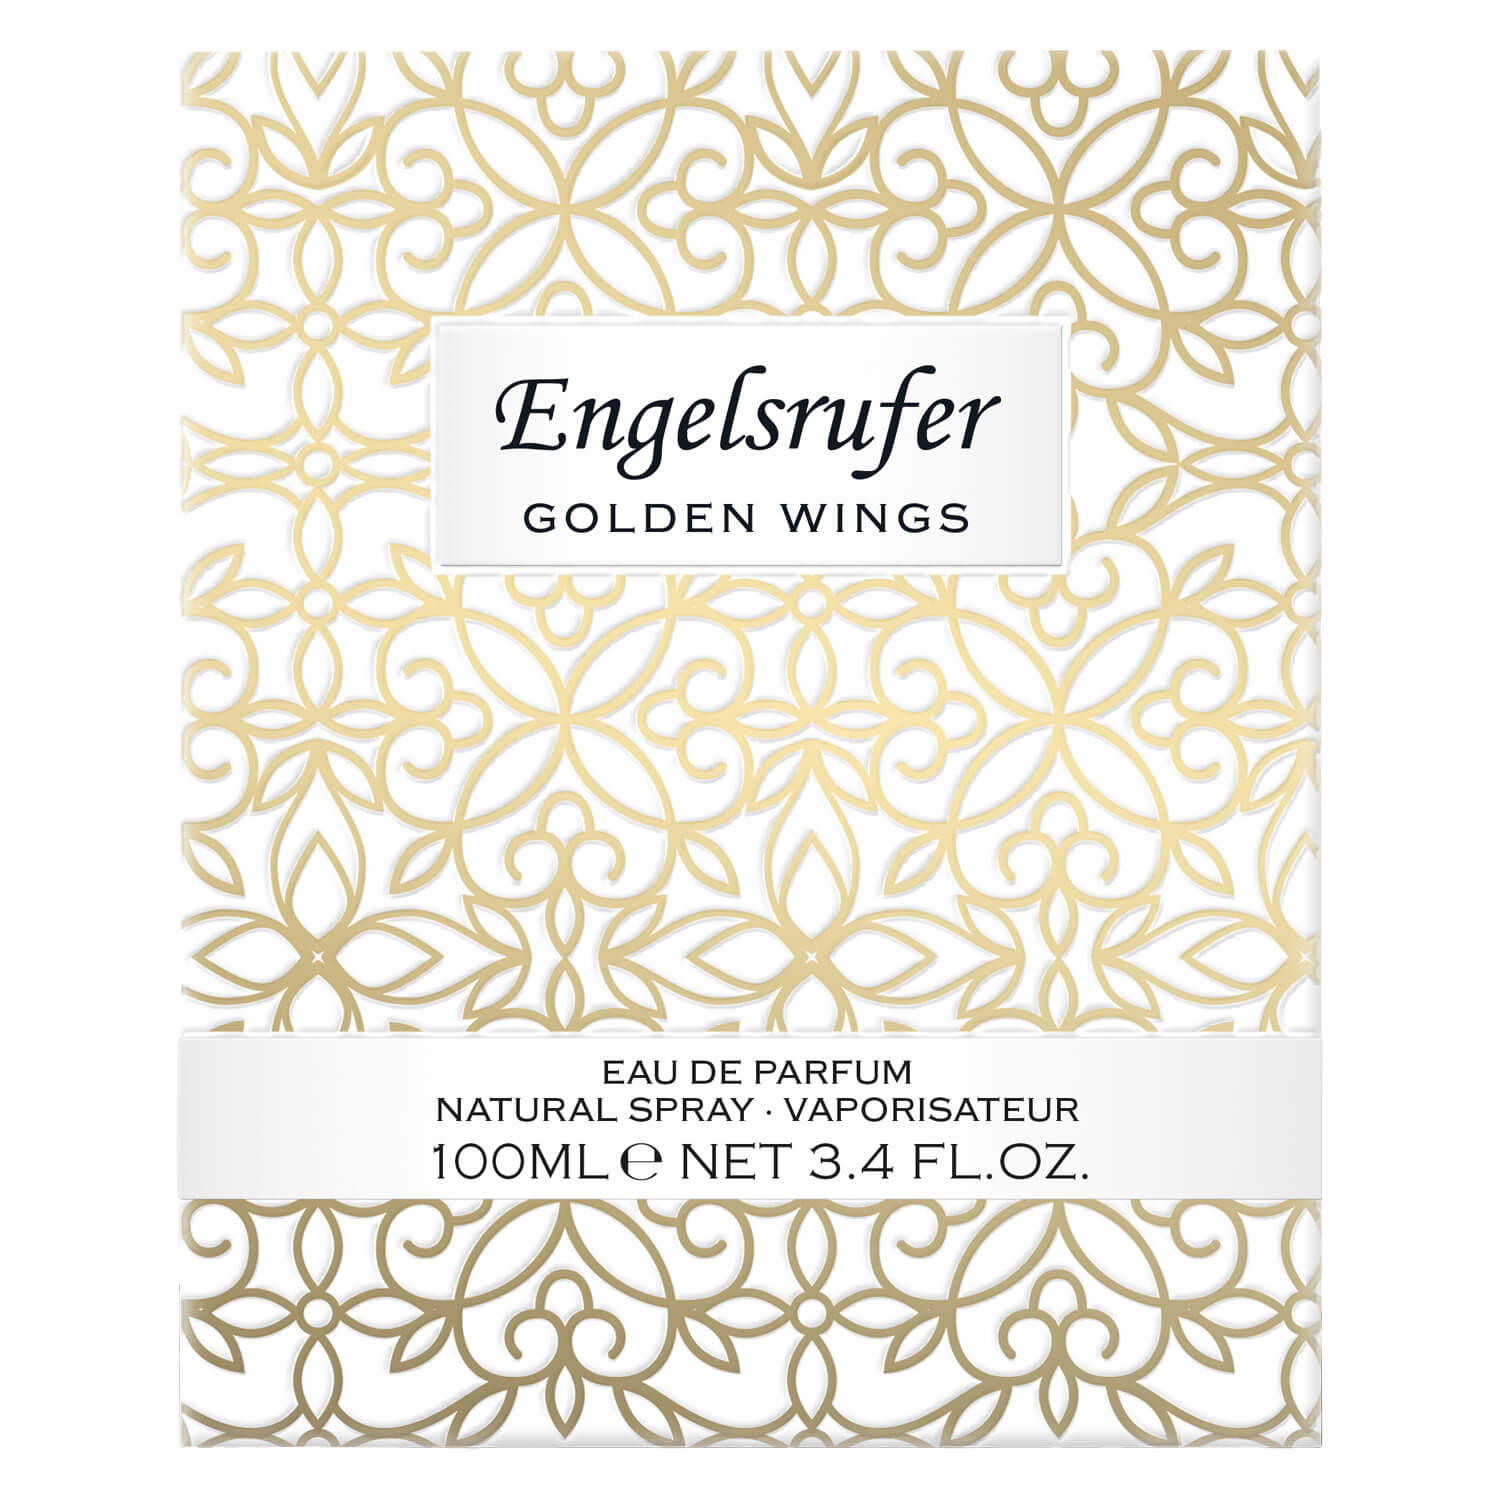 Engelsrufer - Golden Wings Eau de Parfum